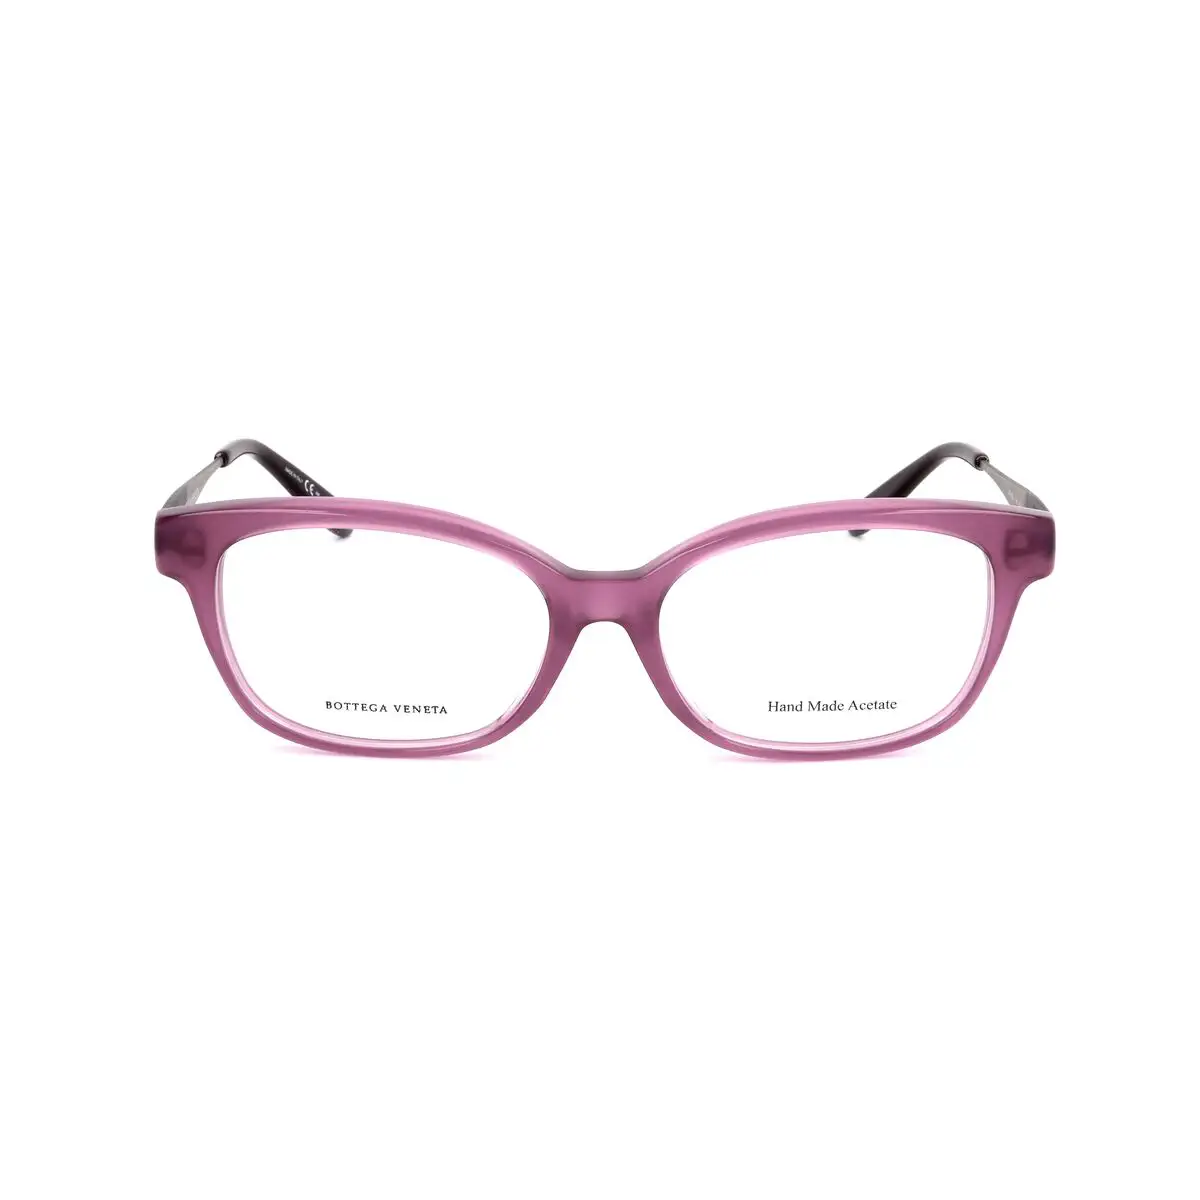 Monture de lunettes femme bottega veneta bv 602 j f2b argente_6651. Entrez dans DIAYTAR SENEGAL - Où Chaque Détail Compte. Explorez notre boutique en ligne pour trouver des produits de haute qualité, soigneusement choisis pour répondre à vos besoins et vos désirs.